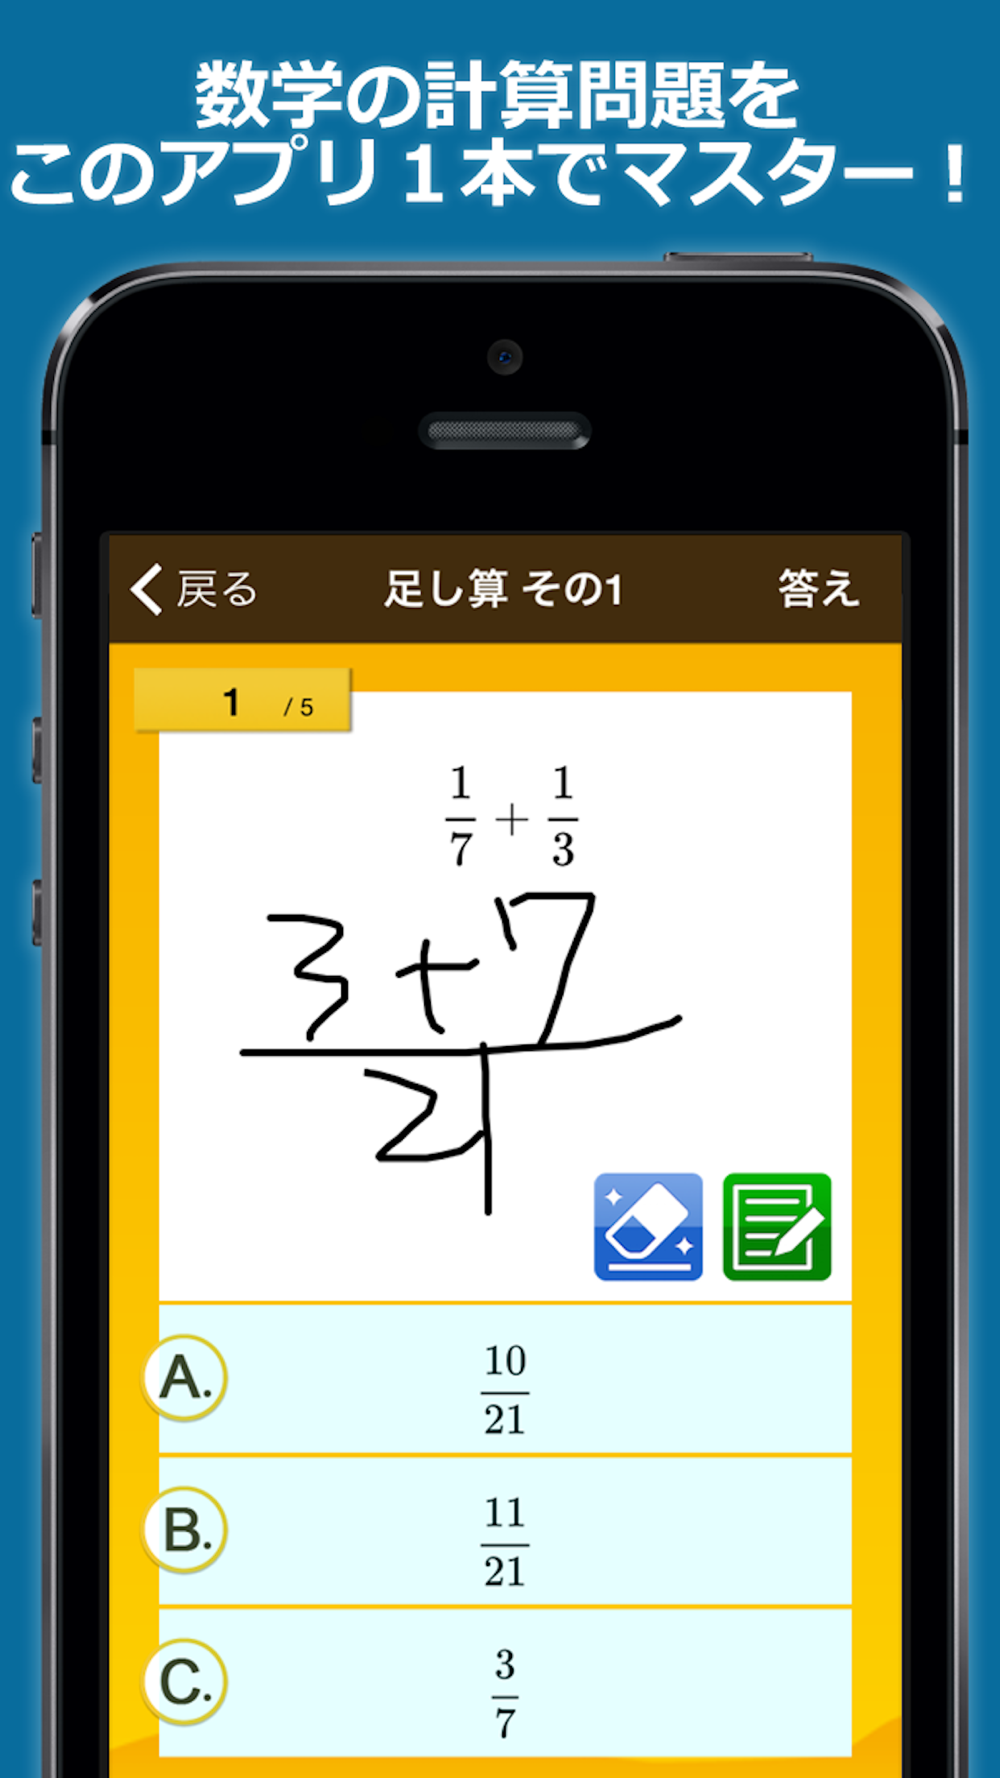 数学検定 数学計算トレーニング Free Download App For Iphone Steprimo Com